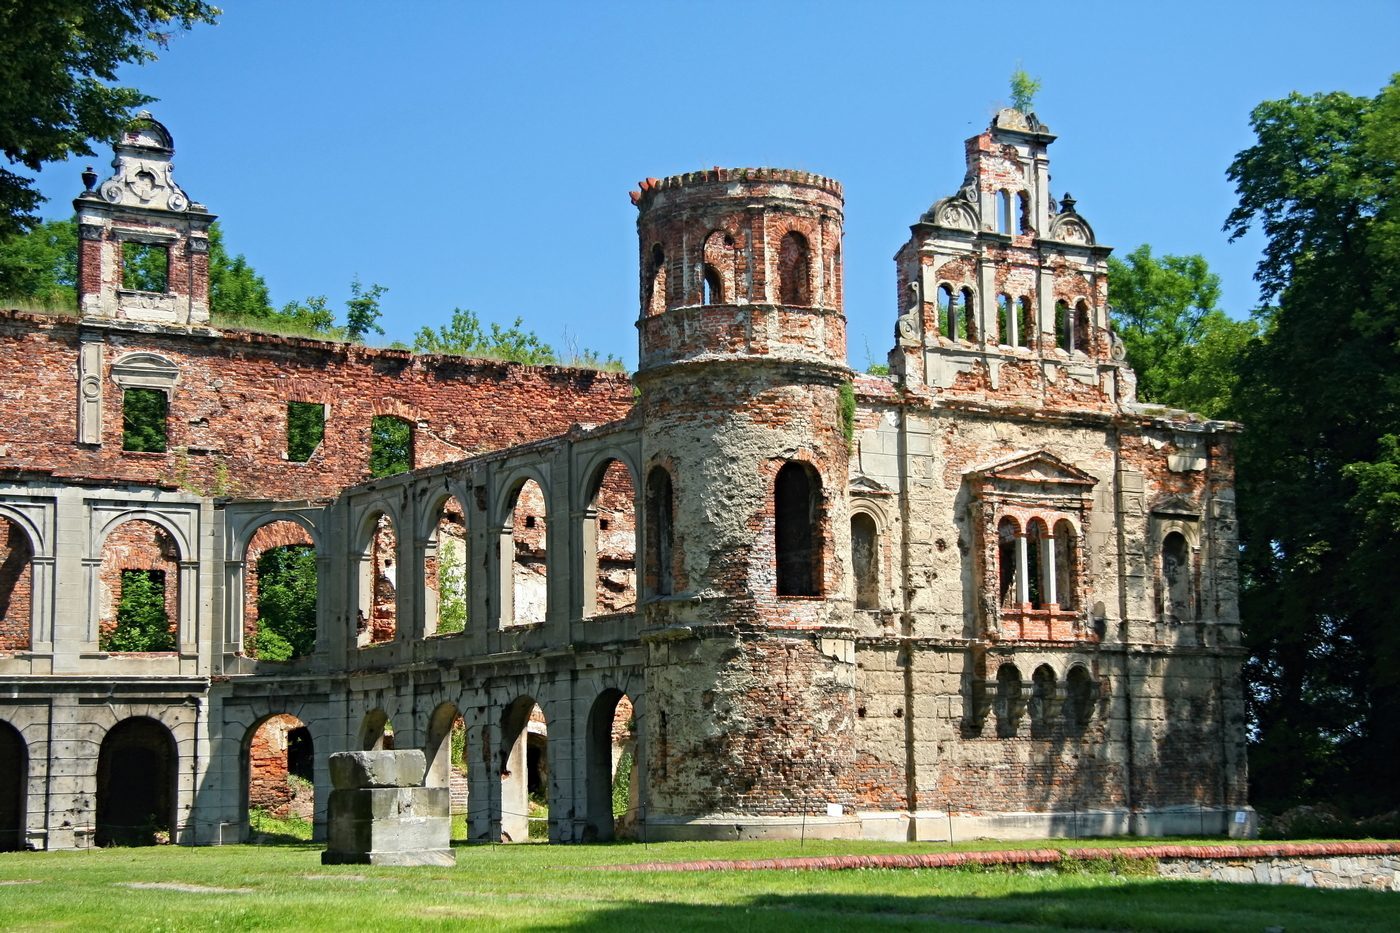 Zamek w Tworkowie zwany też pałacem w Tworkowie – zamki w największej ruinie